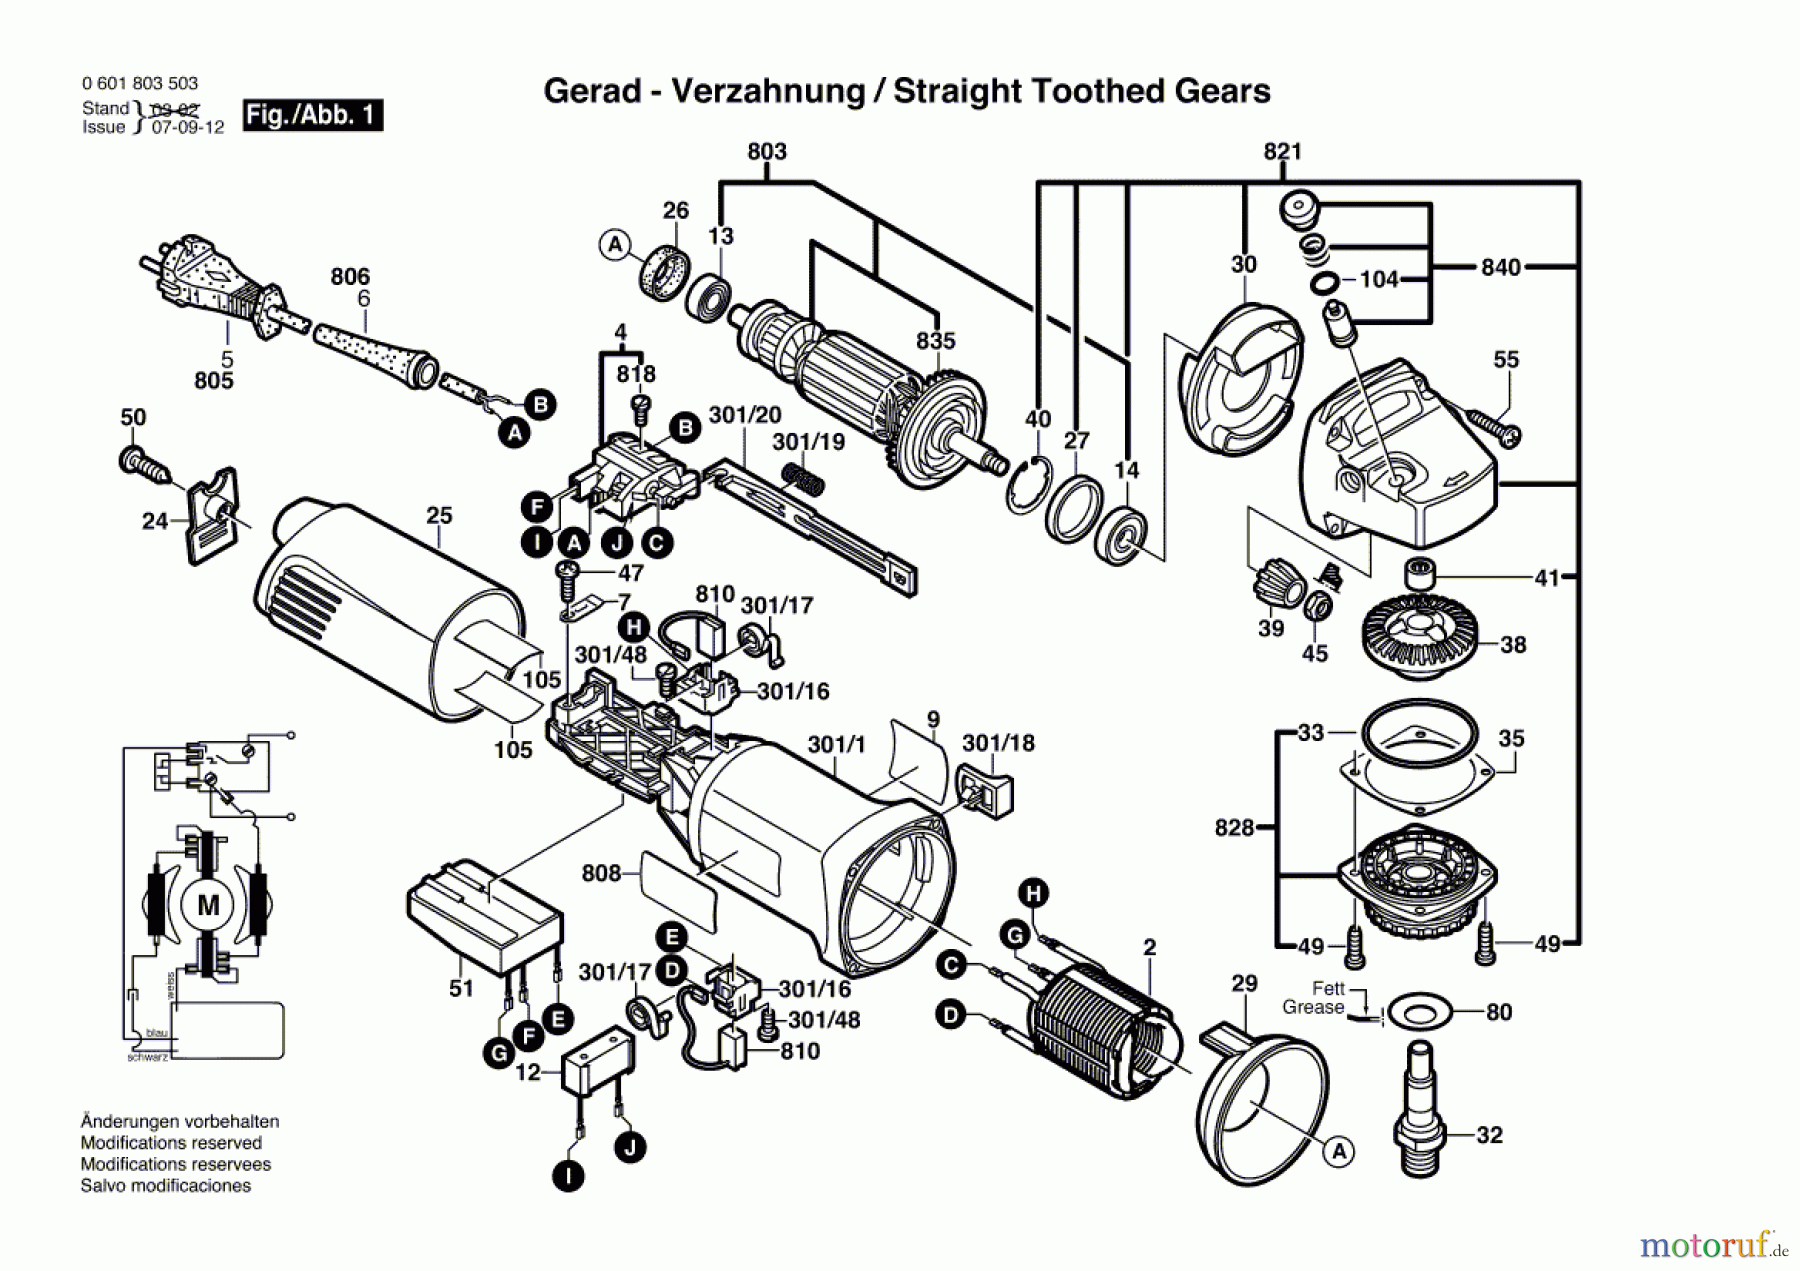  Bosch Werkzeug Winkelschleifer GWS 10-125 CE Seite 1